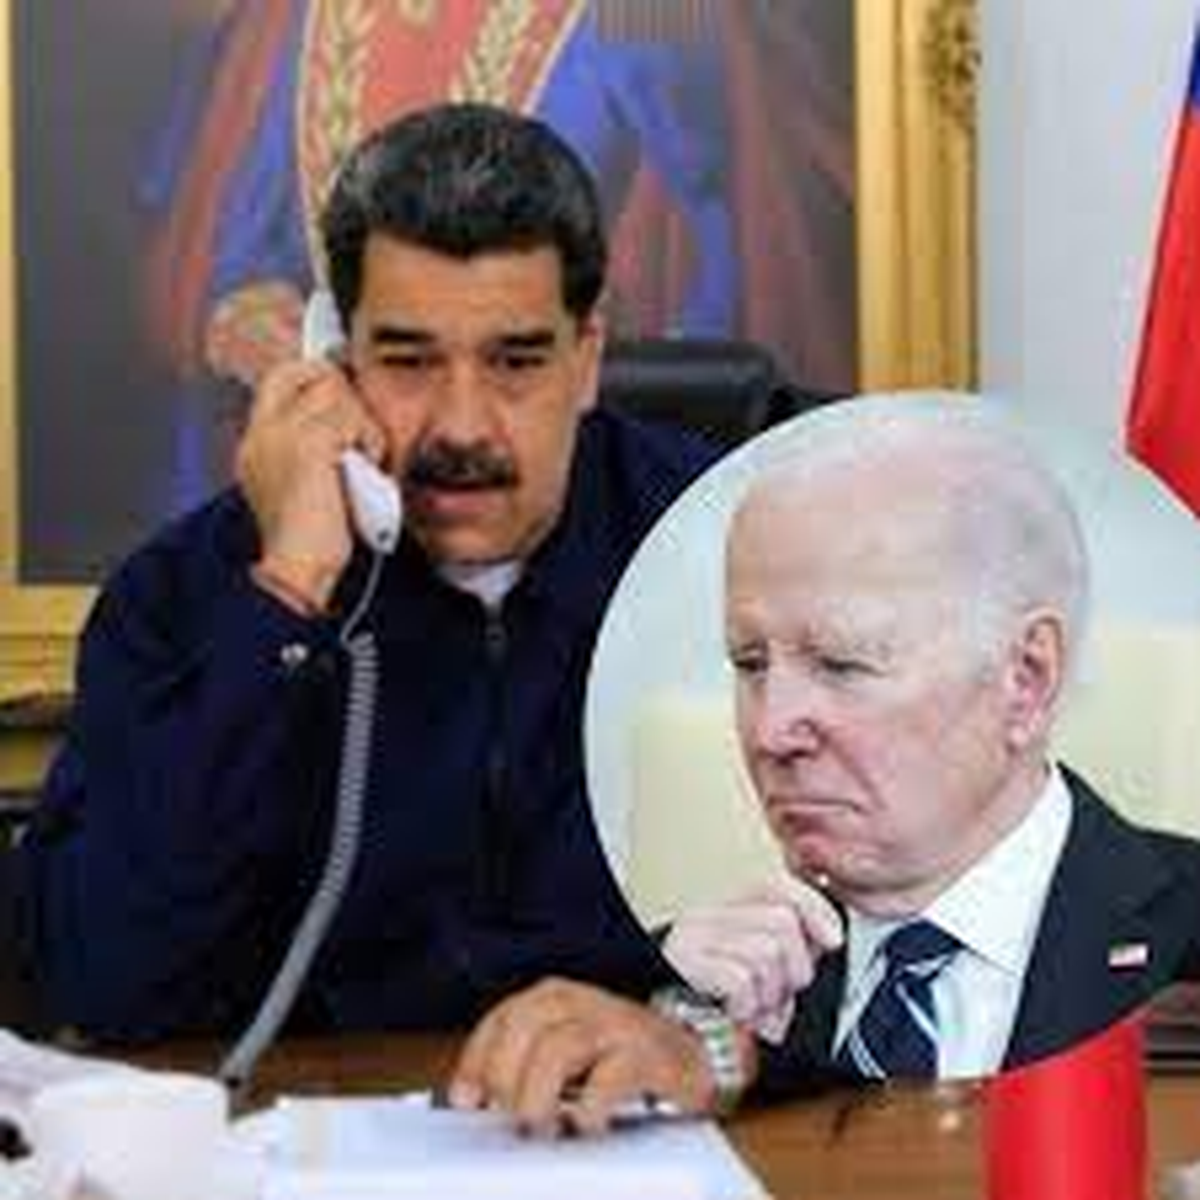 Nicolás Maduro en diálogo con Joe Biden durante el año pasado.